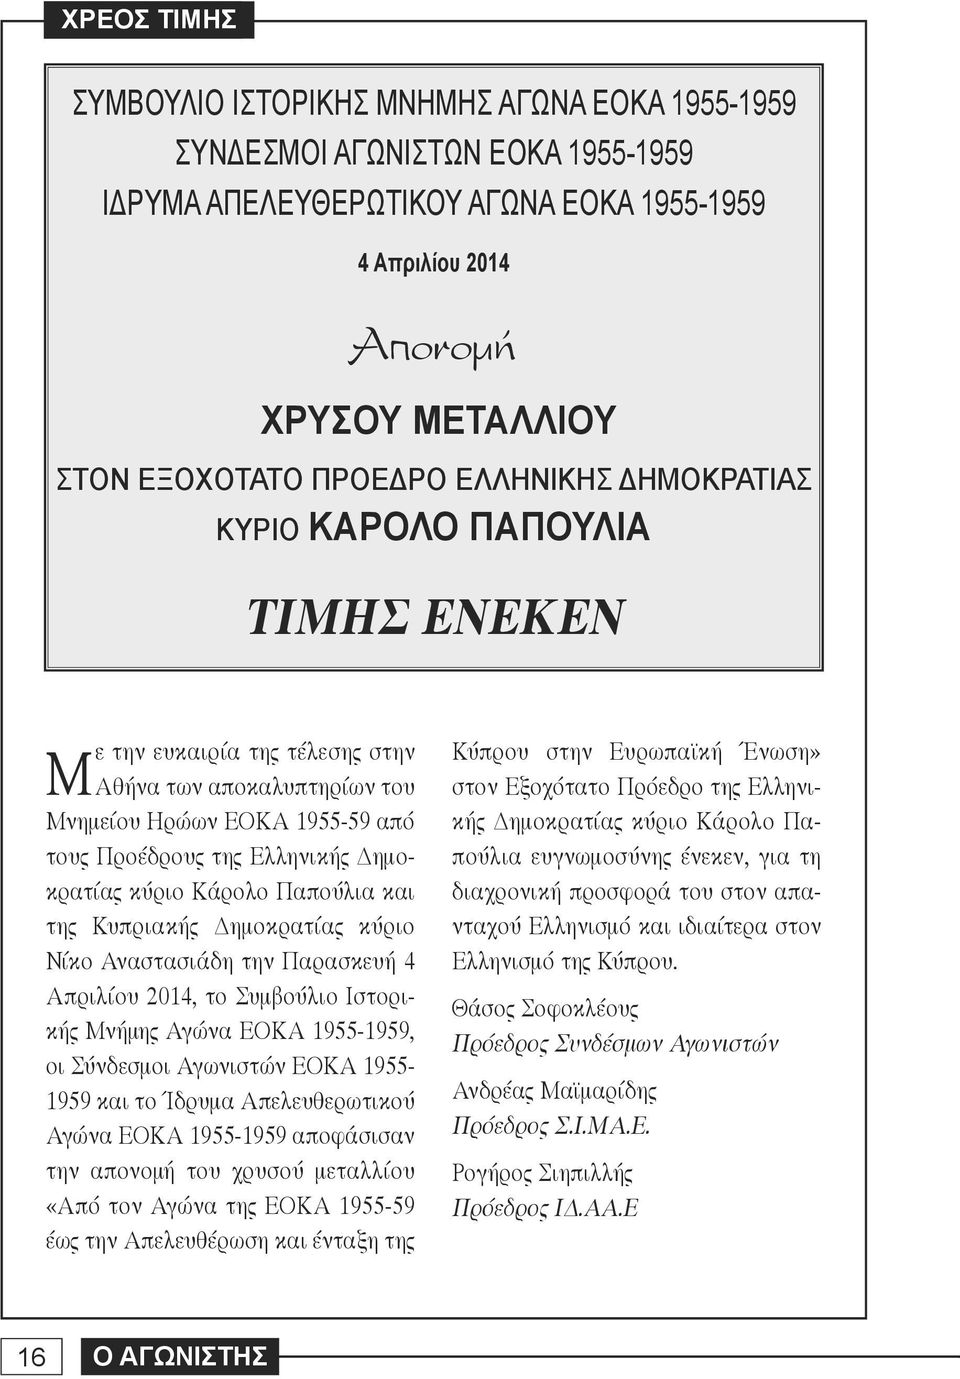 κύριο Κάρολο Παπούλια και της Κυπριακής Δημοκρατίας κύριο Νίκο Αναστασιάδη την Παρασκευή 4 Απριλίου 2014, το Συμβούλιο Ιστορικής Μνήμης Αγώνα ΕΟΚΑ 1955-1959, οι Σύνδεσμοι Αγωνιστών ΕΟΚΑ 1955-1959 και